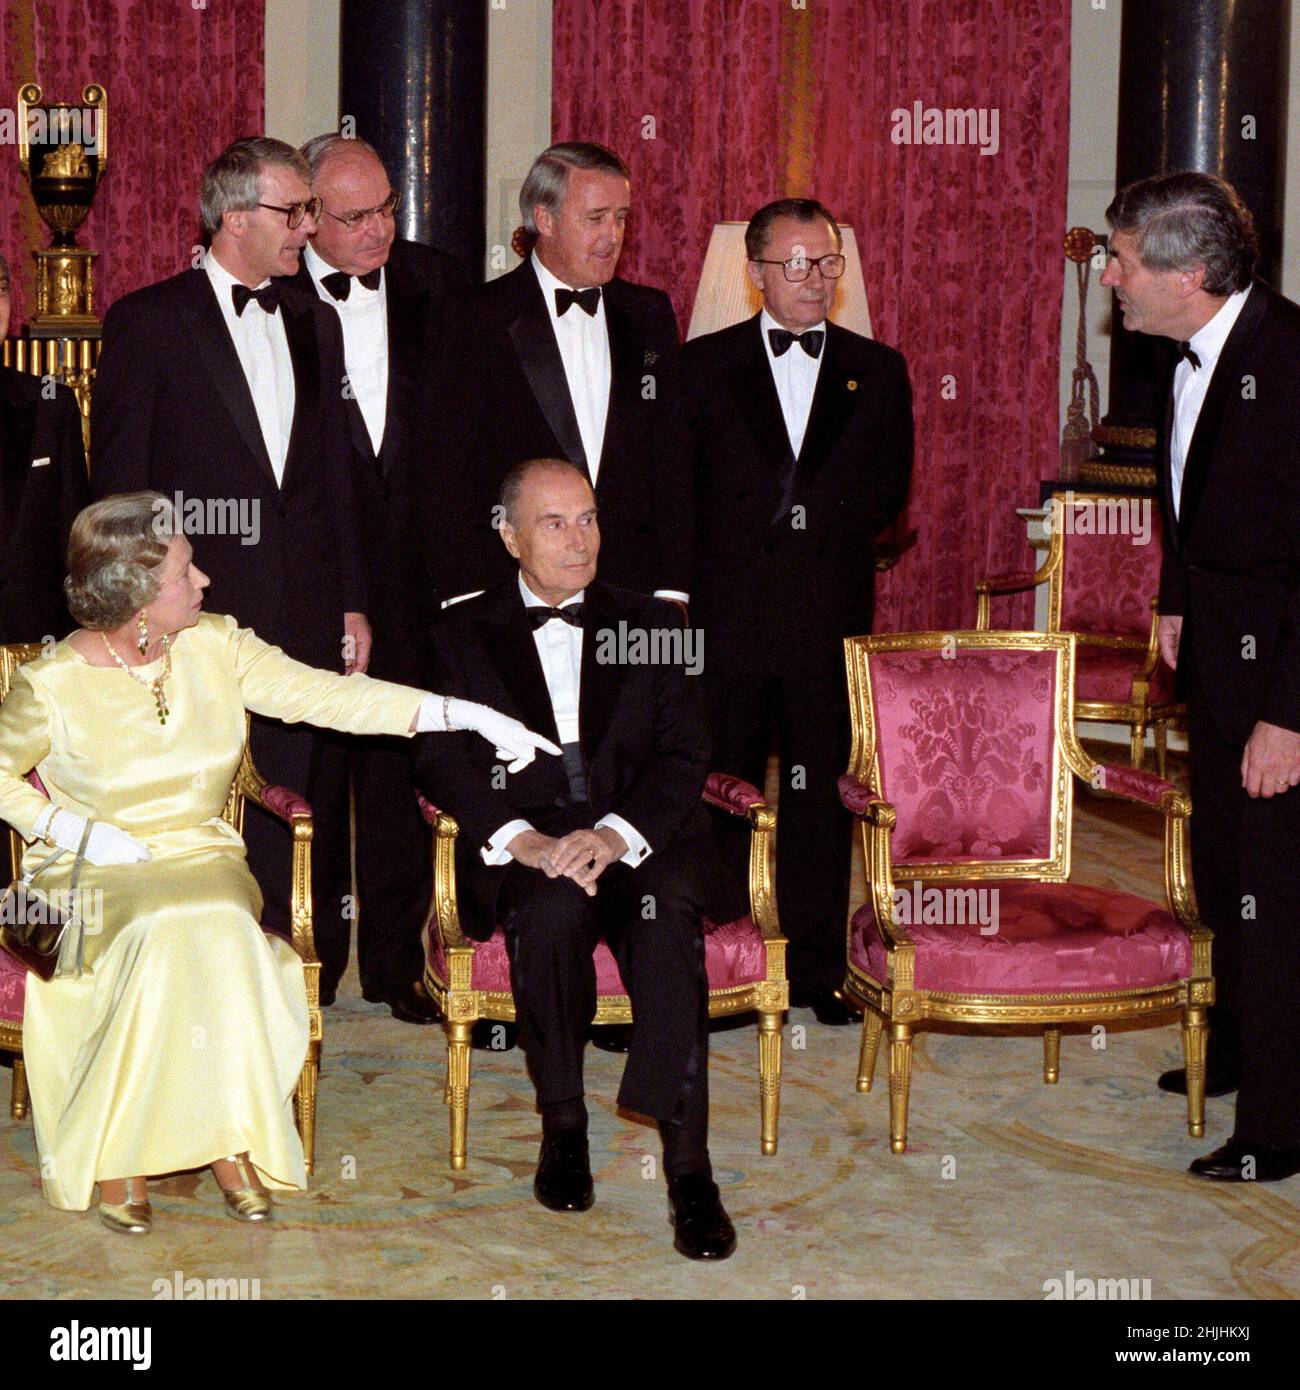 Foto del expediente del 16/07/91, de la Reina Isabel II, que se dirige a Ruud Lubbers, Primer Ministro de los Países Bajos y Presidente del Consejo de Ministros de la CE, para sentarse en una silla vacía después de la ausencia del Duque de Edimburgo, Los líderes de los países de la Cumbre de G7 se reunieron para hacer una foto-llamada antes de la cena en la sala de música del Palacio de Buckingham, Londres. Fecha de emisión: Domingo 30 de enero de 2022. Foto de stock